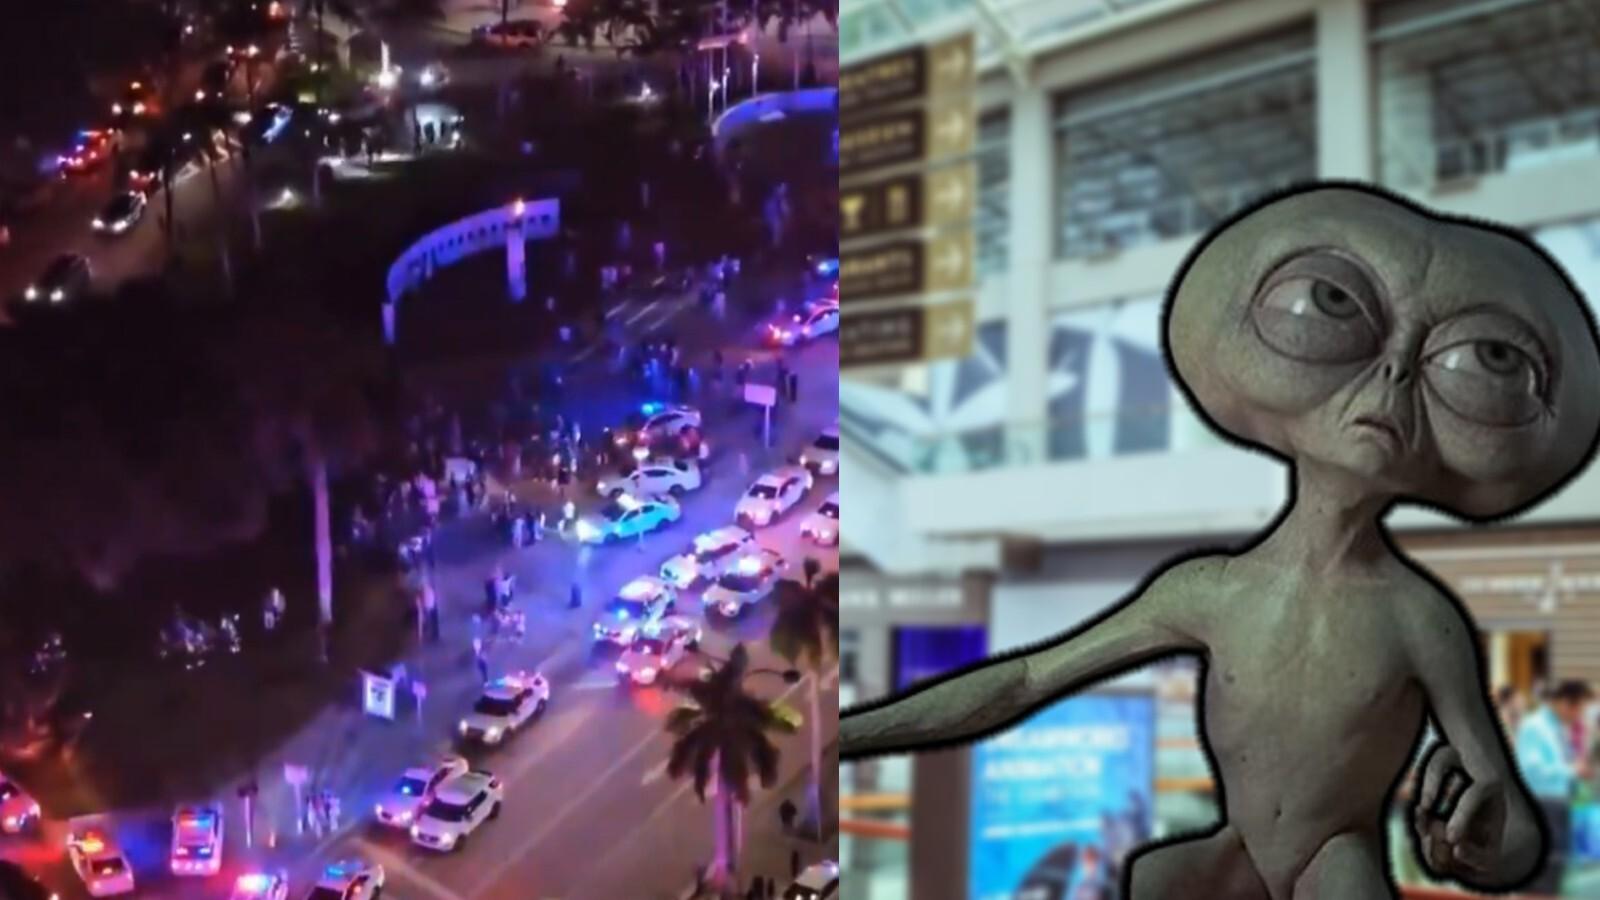 police-debunk-miami-mall-alien-claims